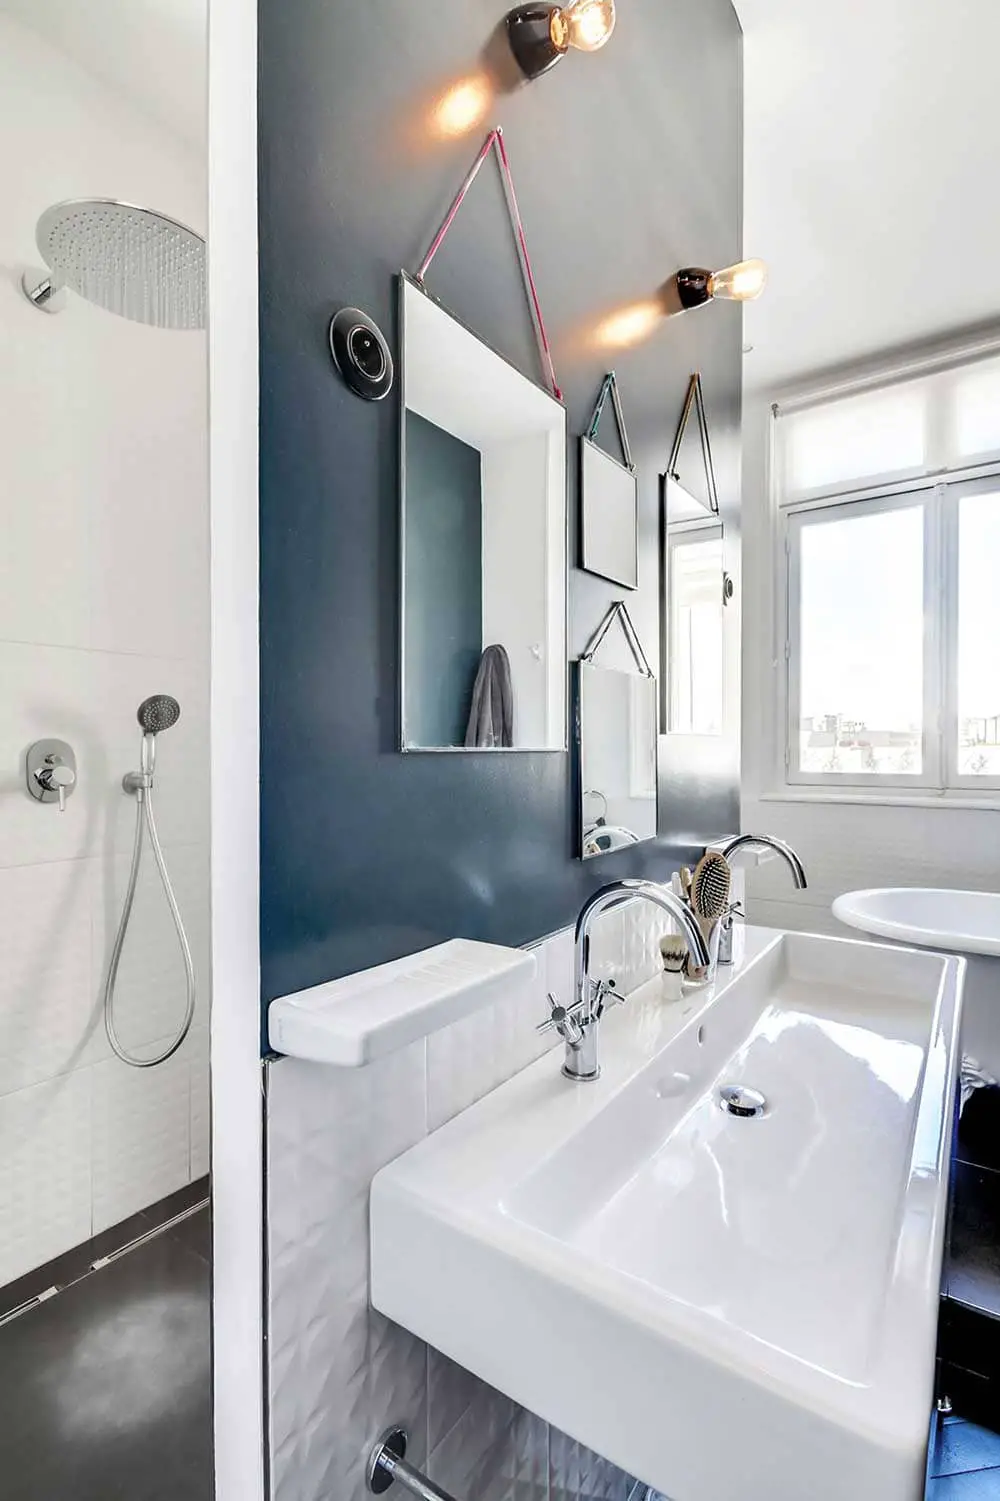 Salle de bain de style haussmannien avec muret bleu pétrole